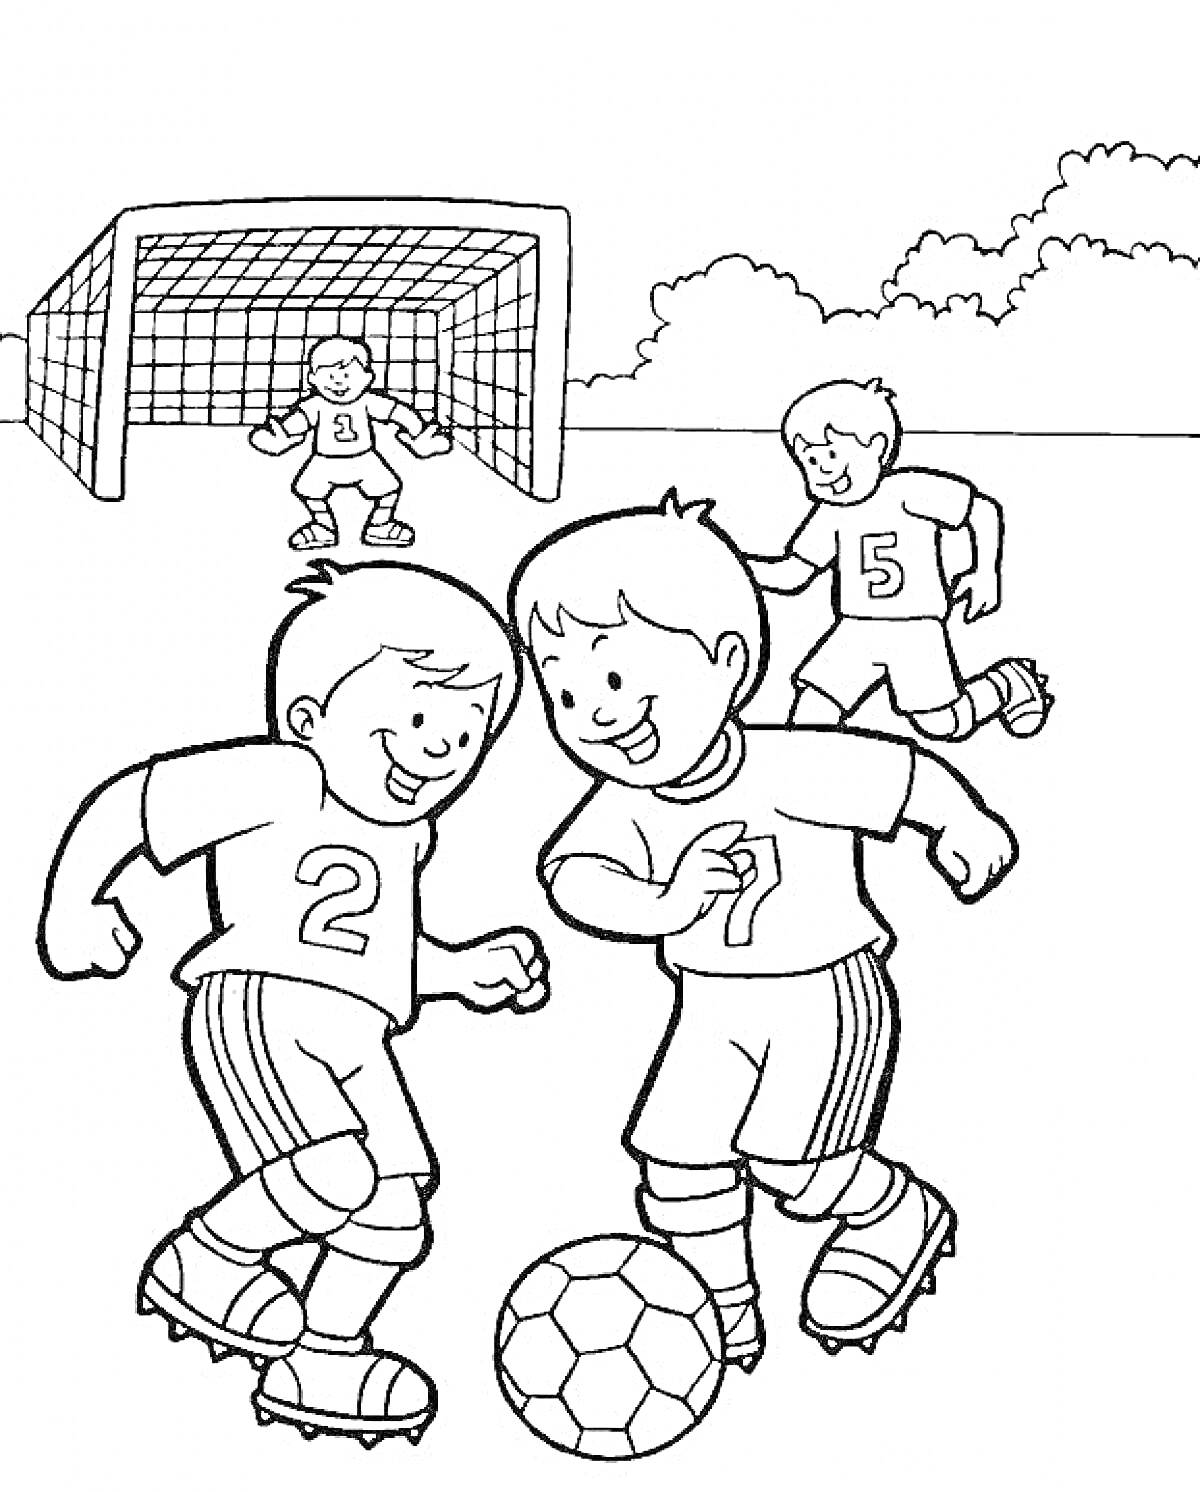 Детский футбольный матч с тремя игроками и вратарем перед воротами